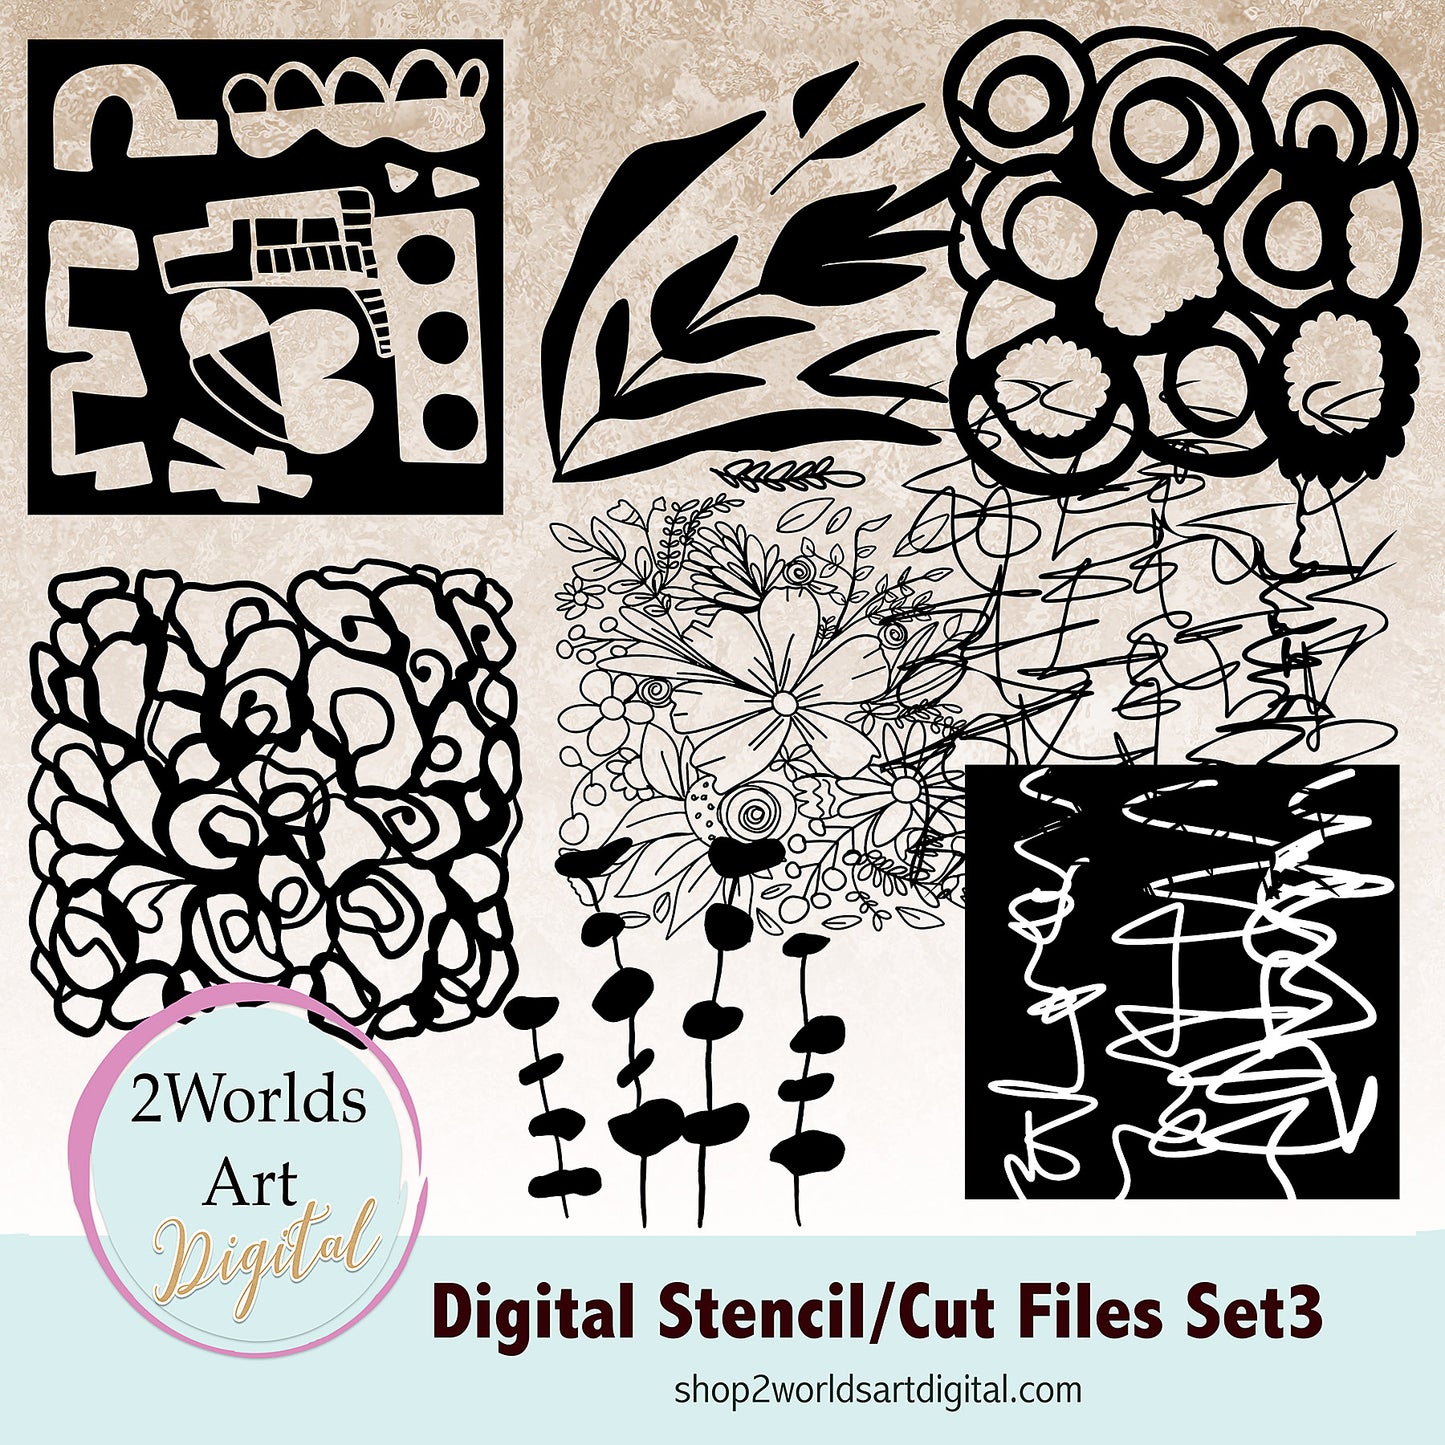 Digital Stencils /Cut Files set 3